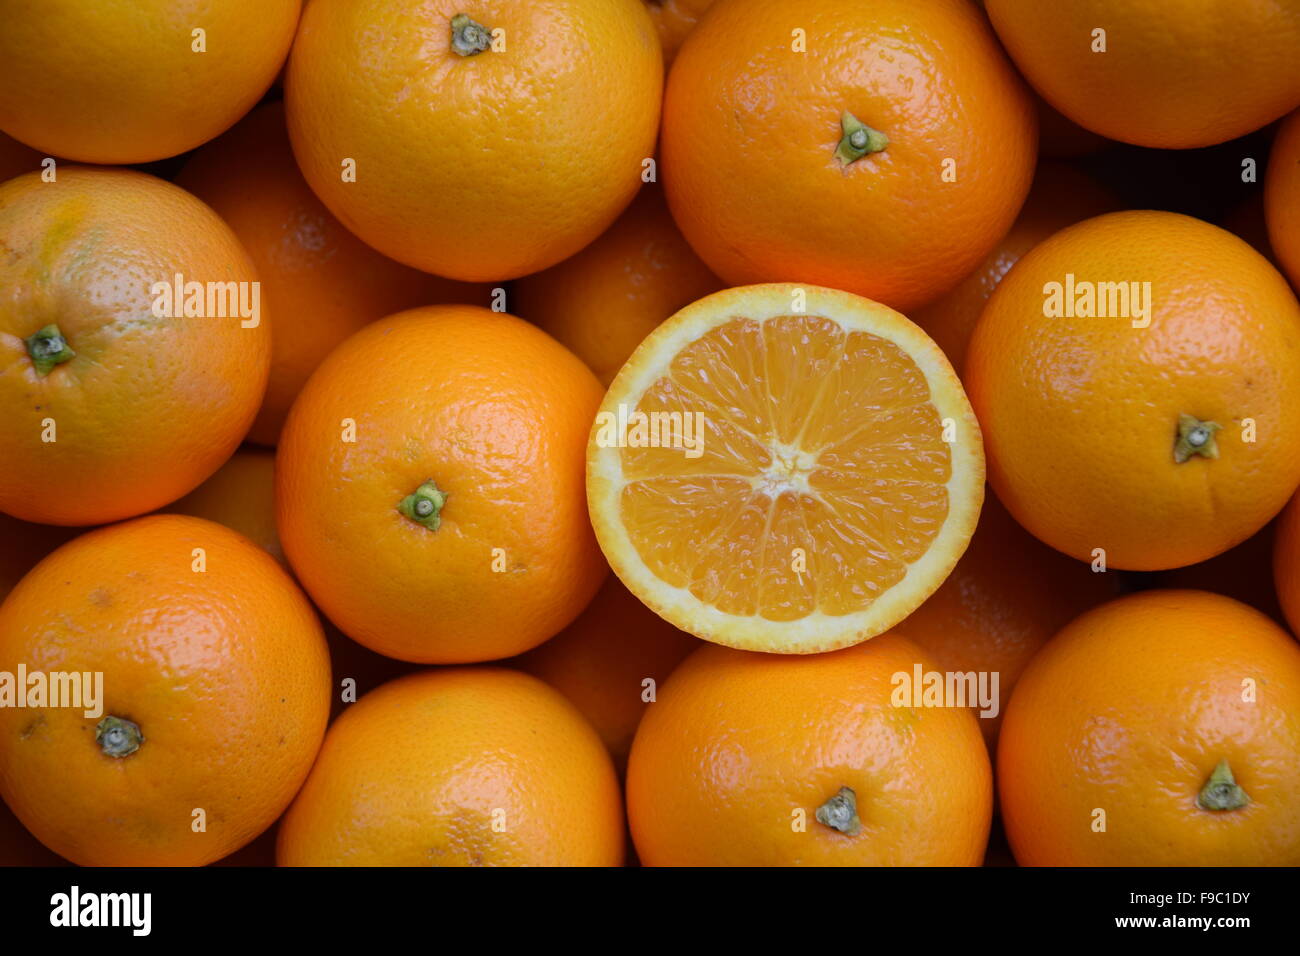 A slice of premium navel orange. Stock Photo